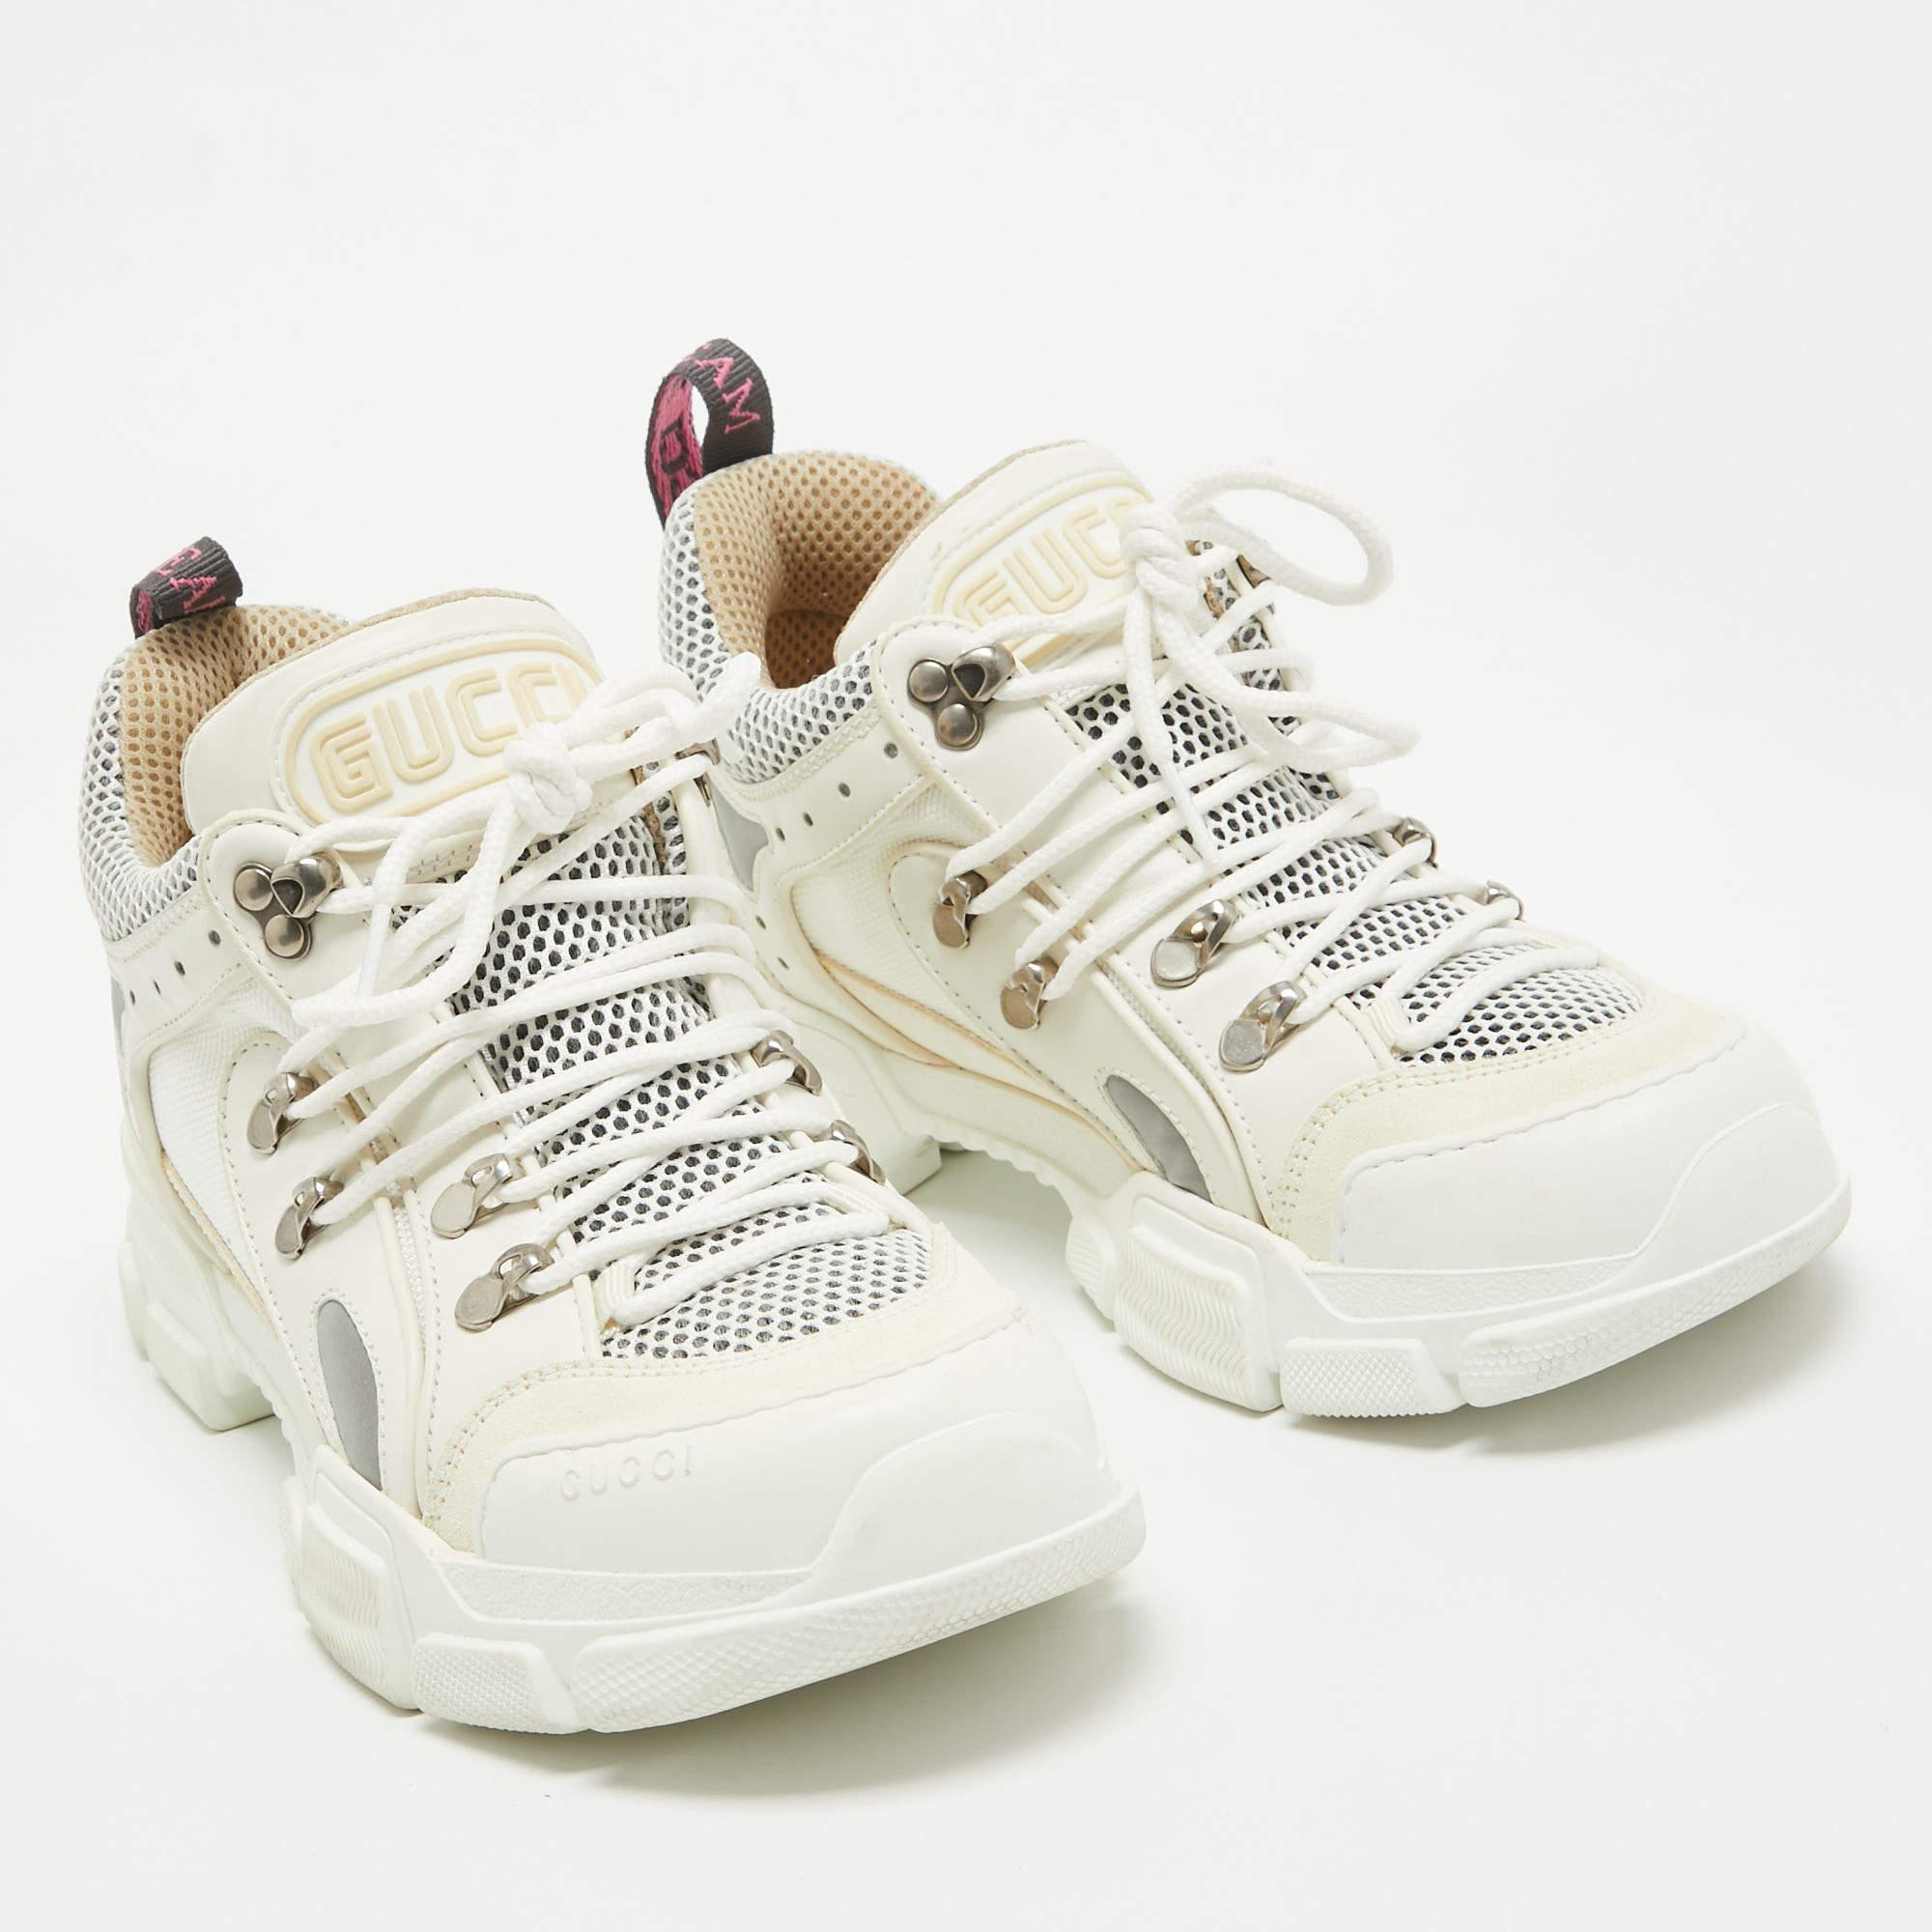 Gucci White/Cream Canvas Leather Flashtrek Sneakers Size 39.5 In Good Condition For Sale In Dubai, Al Qouz 2